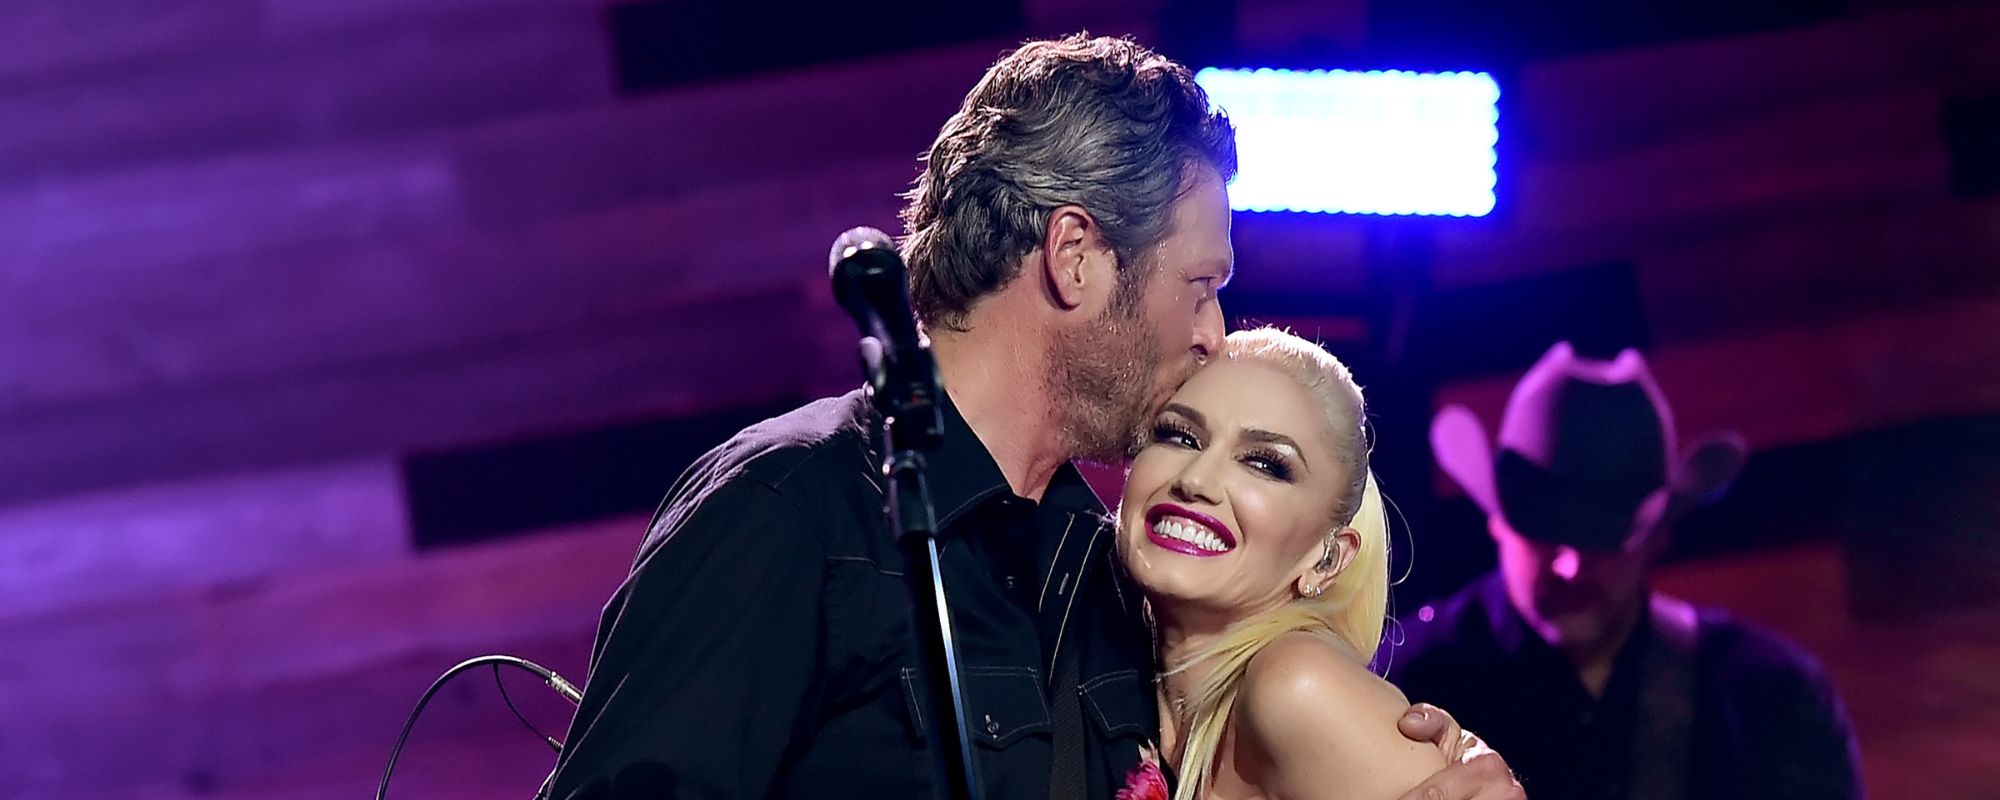 Gwen Stefani and Blake Shelton’s New Video Leaves Fans Speechless